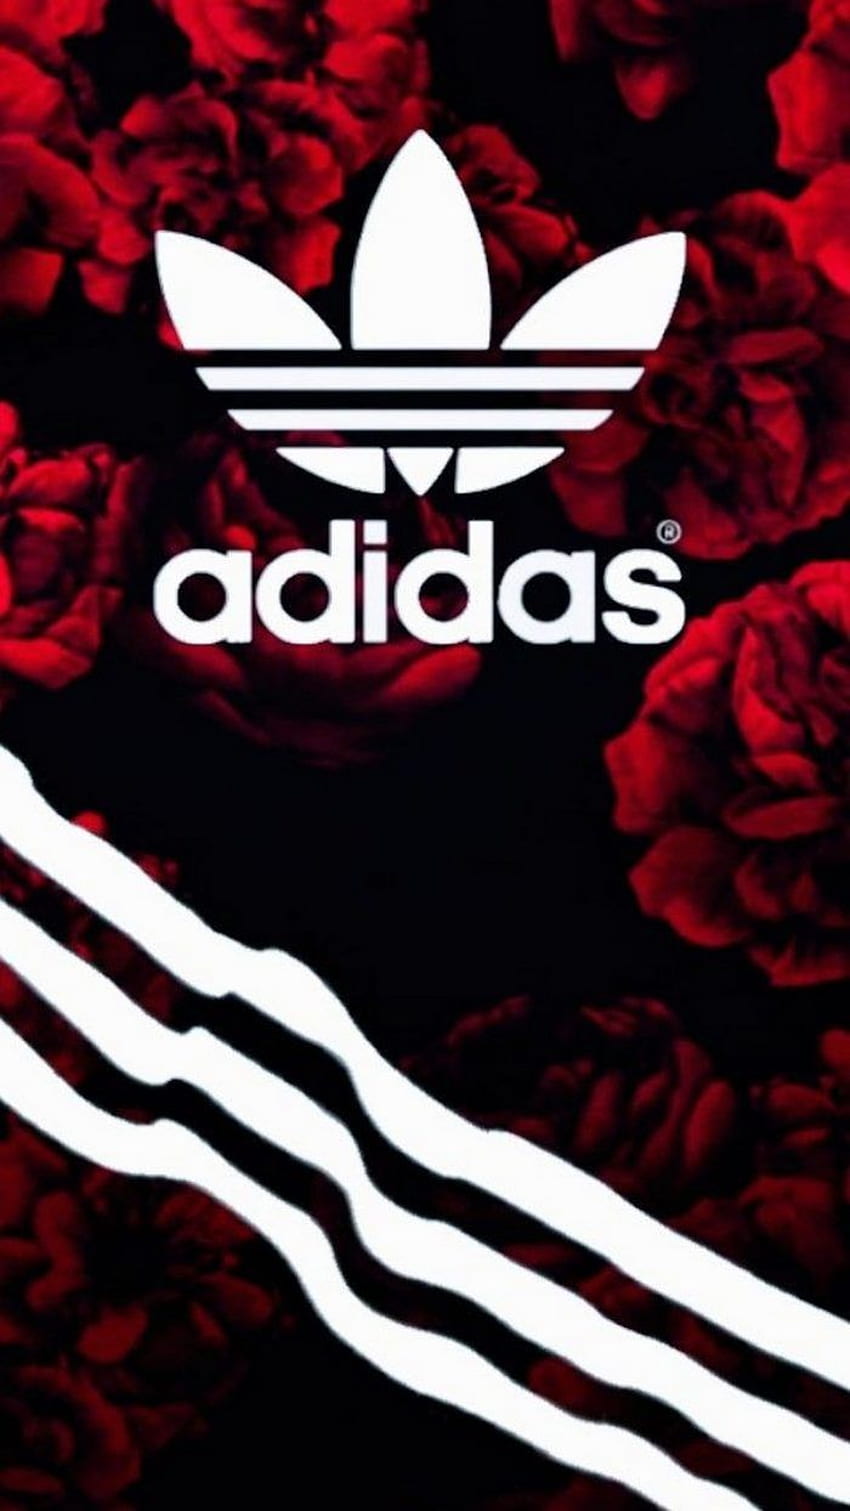 Hình nền Adidas: Nếu bạn là một tín đồ của thương hiệu thể thao Adidas, hãy cập nhật ngay cho màn hình điện thoại của mình hình nền Adidas. Với một loạt những hình ảnh chất lượng cao, đây sẽ là một sự lựa chọn tuyệt vời cho những ai yêu thương thương hiệu này. 